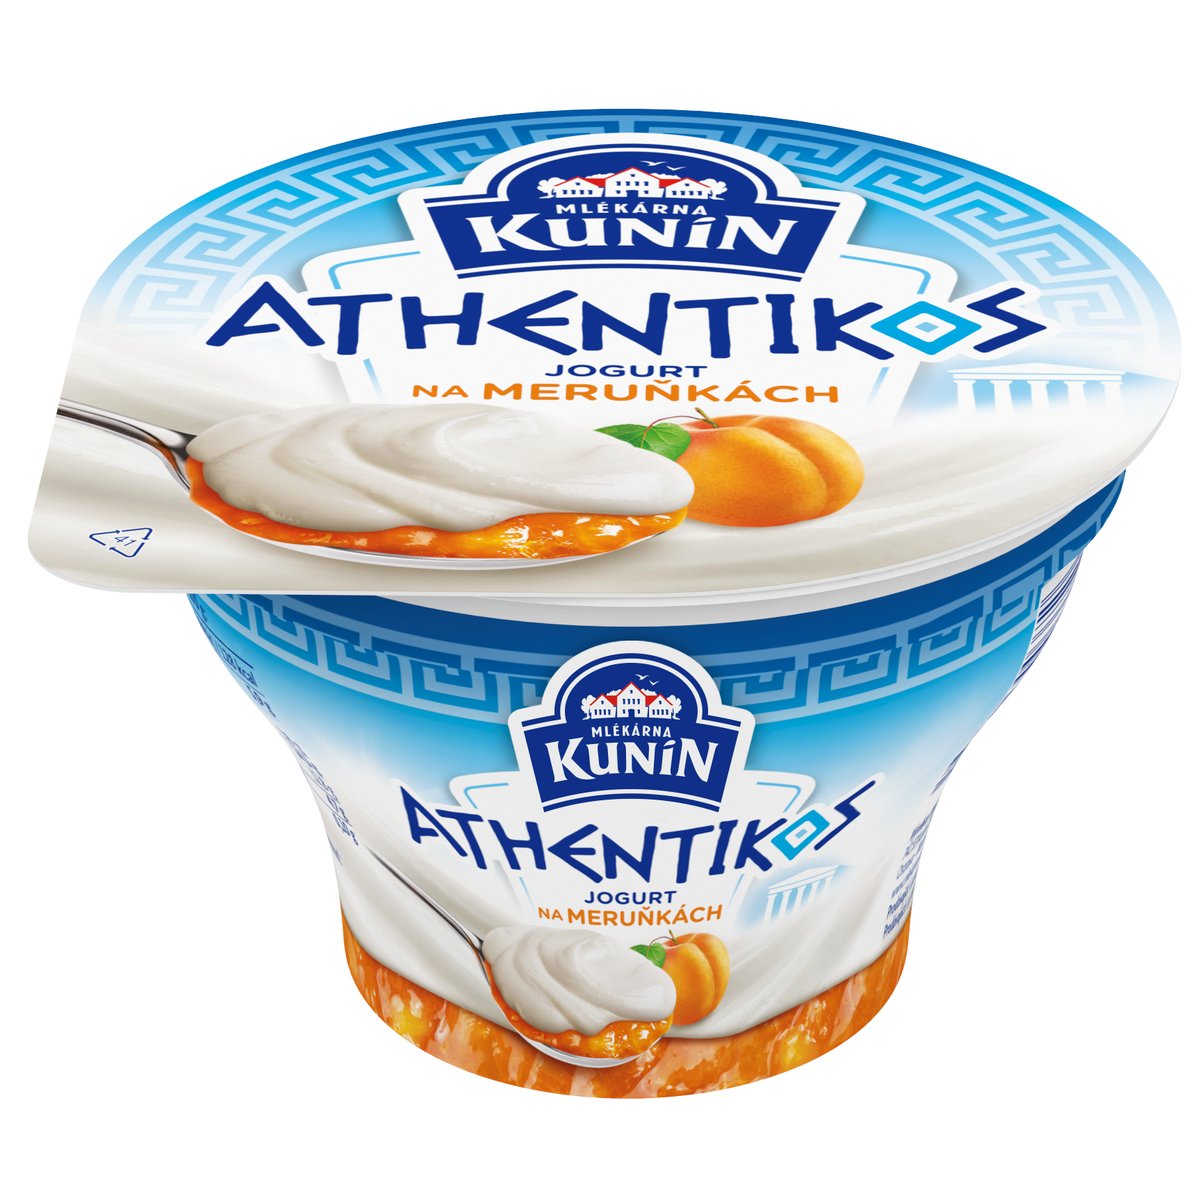 Mlékárna Kunín Athentikos jogurt na meruňkách